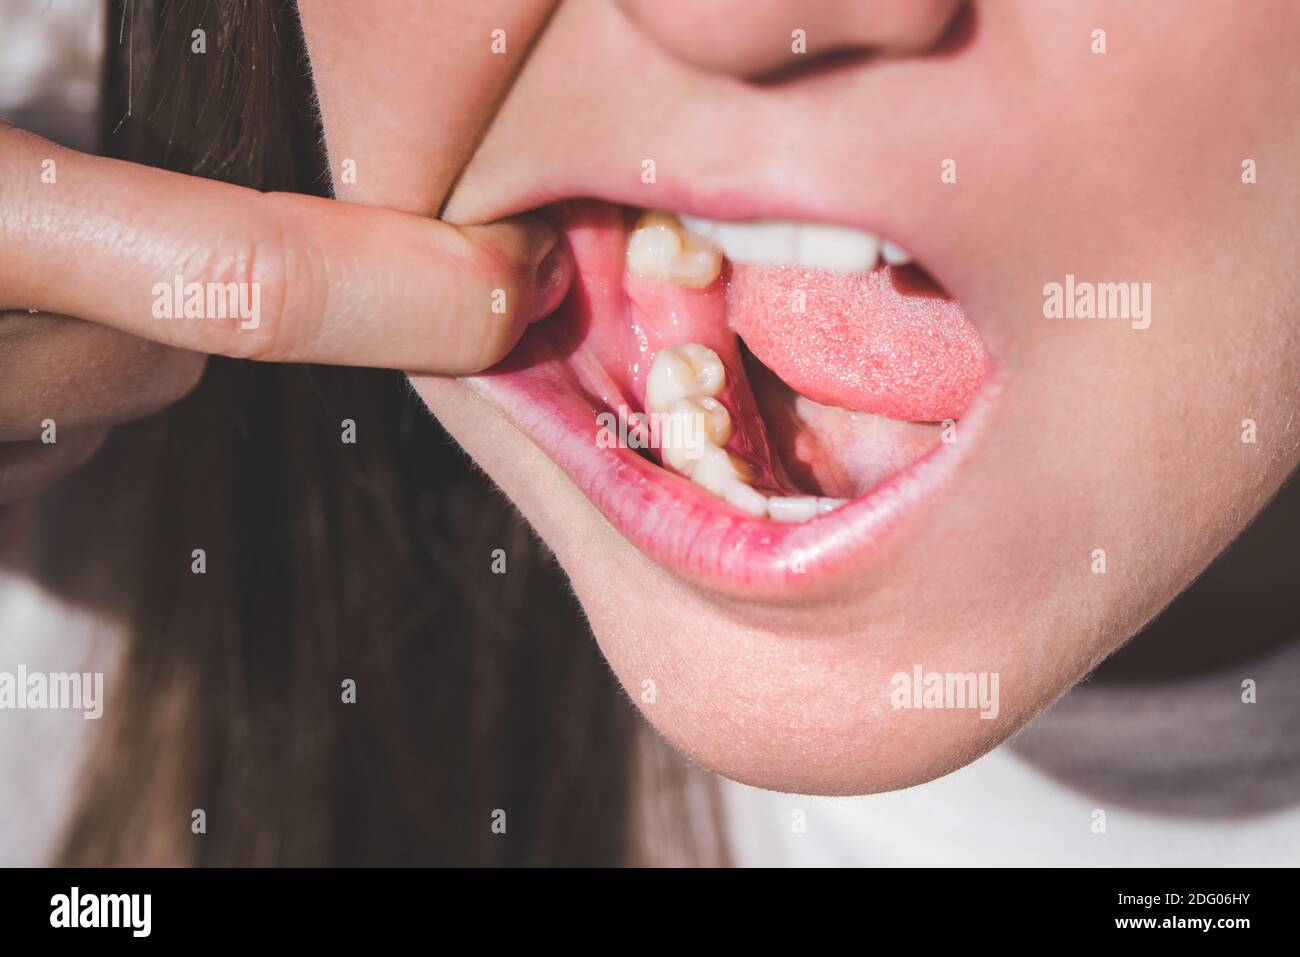 Giovane donna con bocca aperta senza dente sulla mascella inferiore. Dente mancante. In attesa di un impianto dopo l'estrazione del dente Foto Stock